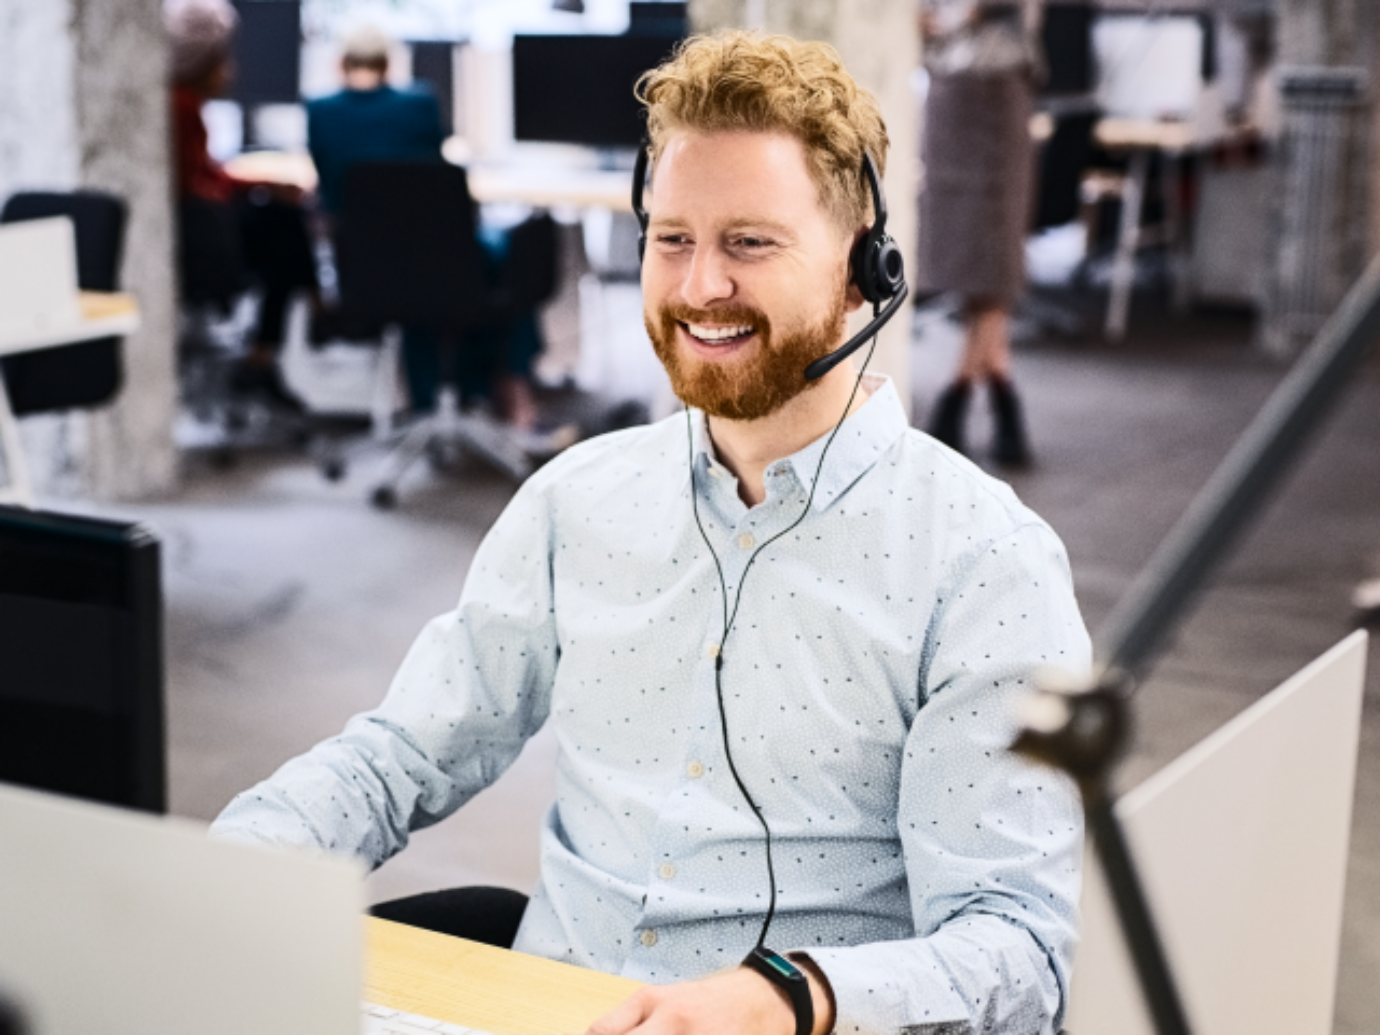 Ein Kundendienstmitarbeiter sitzt in einem Büro und spricht per Headset am Telefon.